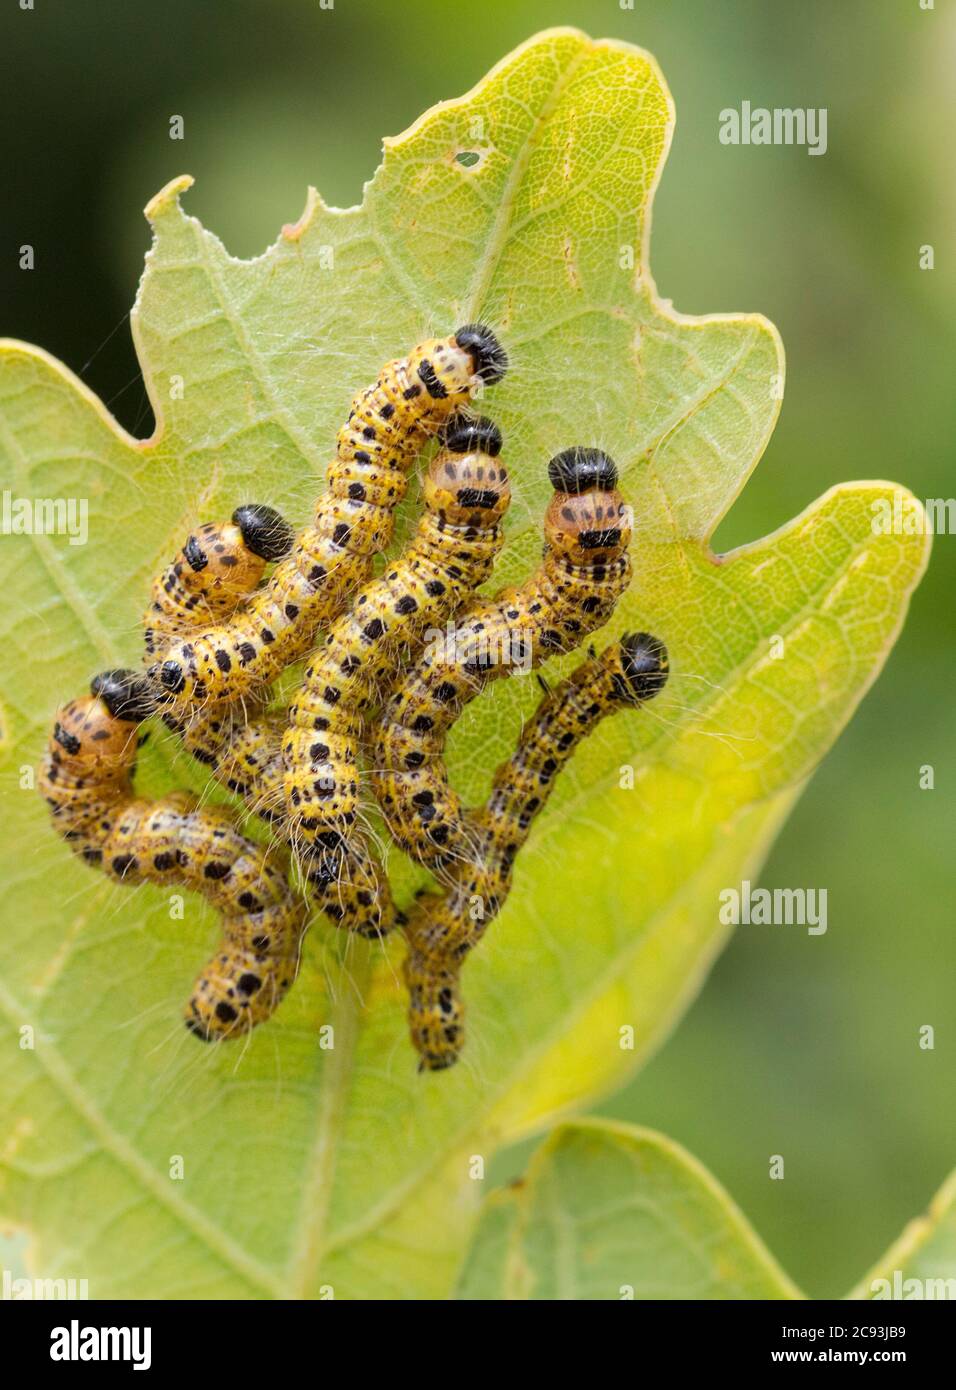 Gelbe Raupen mit Reihen von schwarzen Punkten ein schwarzer Kopf und lange feine Haare in Gruppen auf der Unterseite der Blätter großen weißen Schmetterling Stockfoto